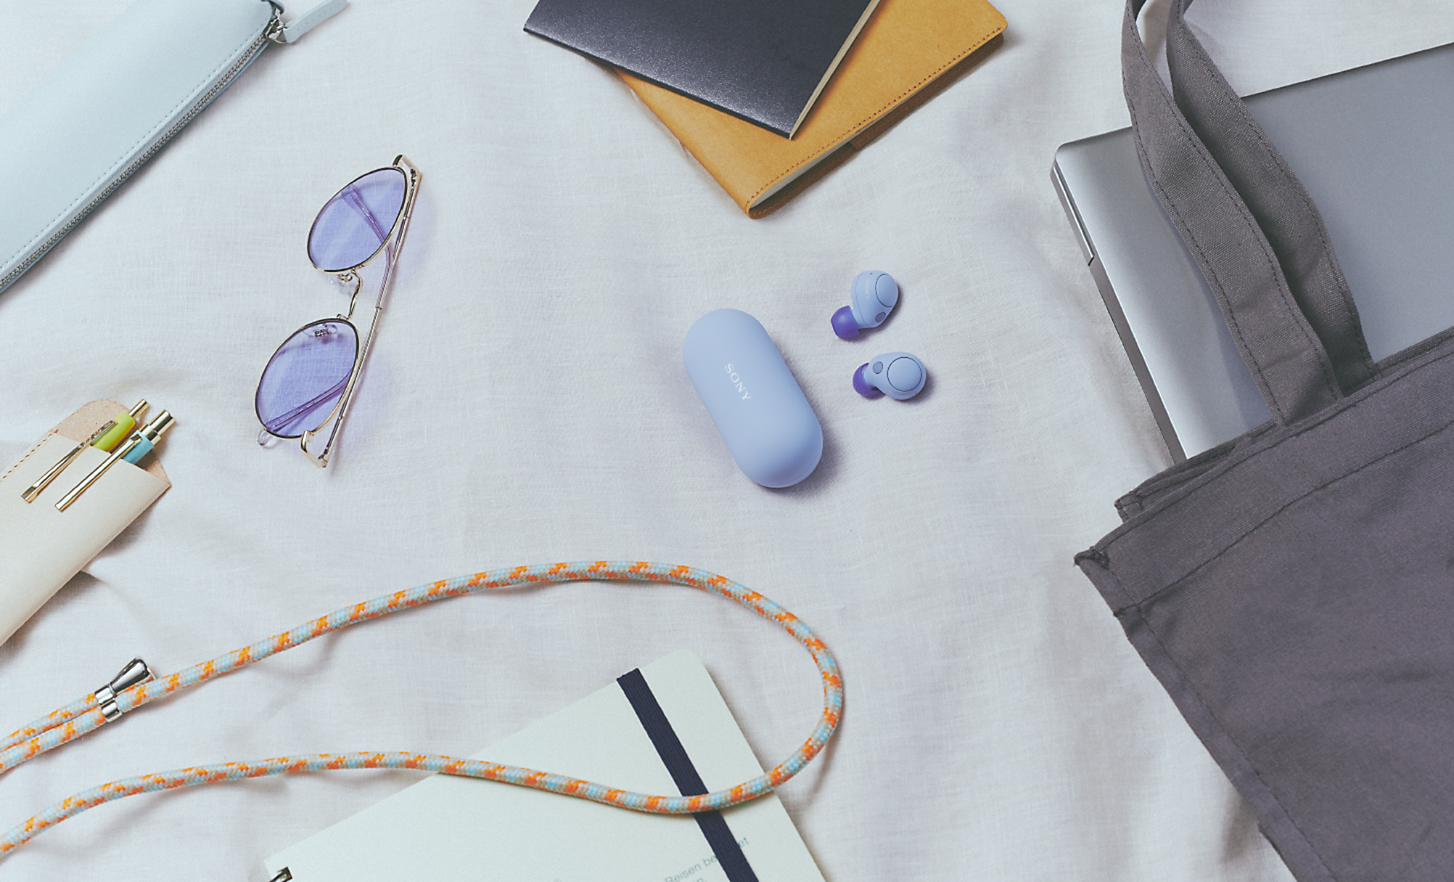 Snímek sluchátek WF-C700N fialové barvy a pouzdra obklopených různými předměty denní potřeby, jako jsou notebook, taška a sluneční brýle